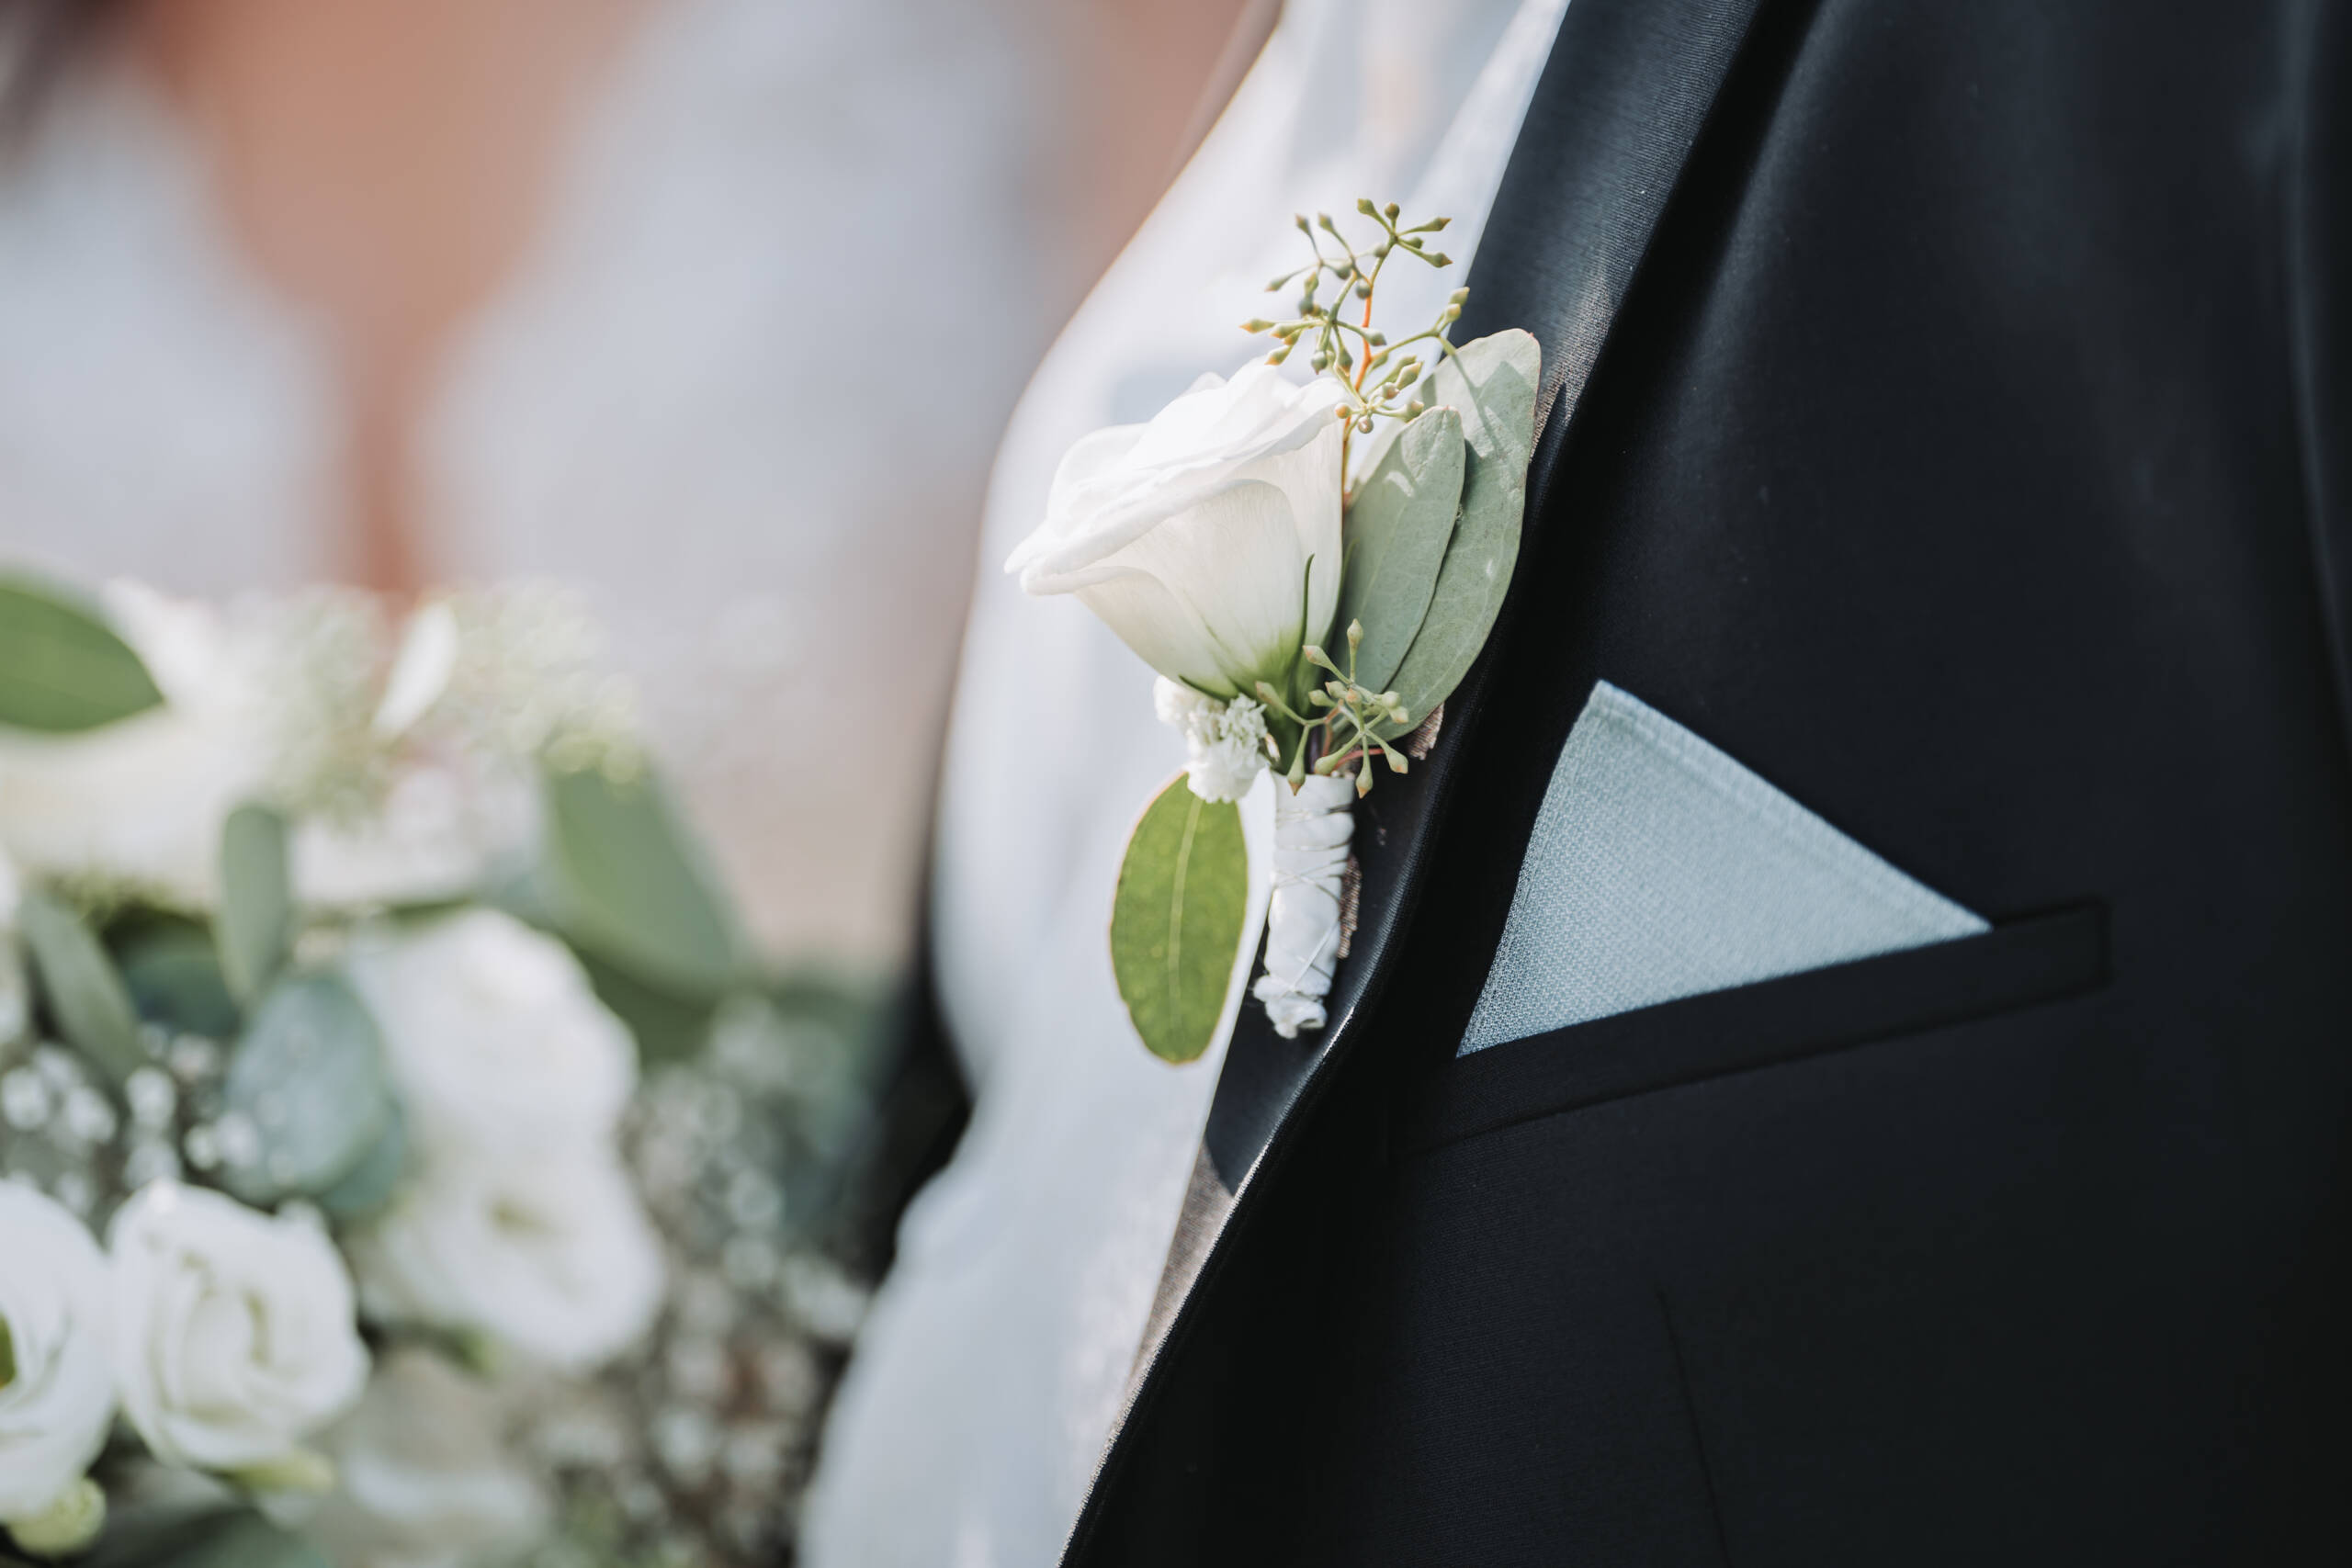 Eine Detailaufnahme des grün weißen Blumenschmuckes am Sakko des Bräutigams.